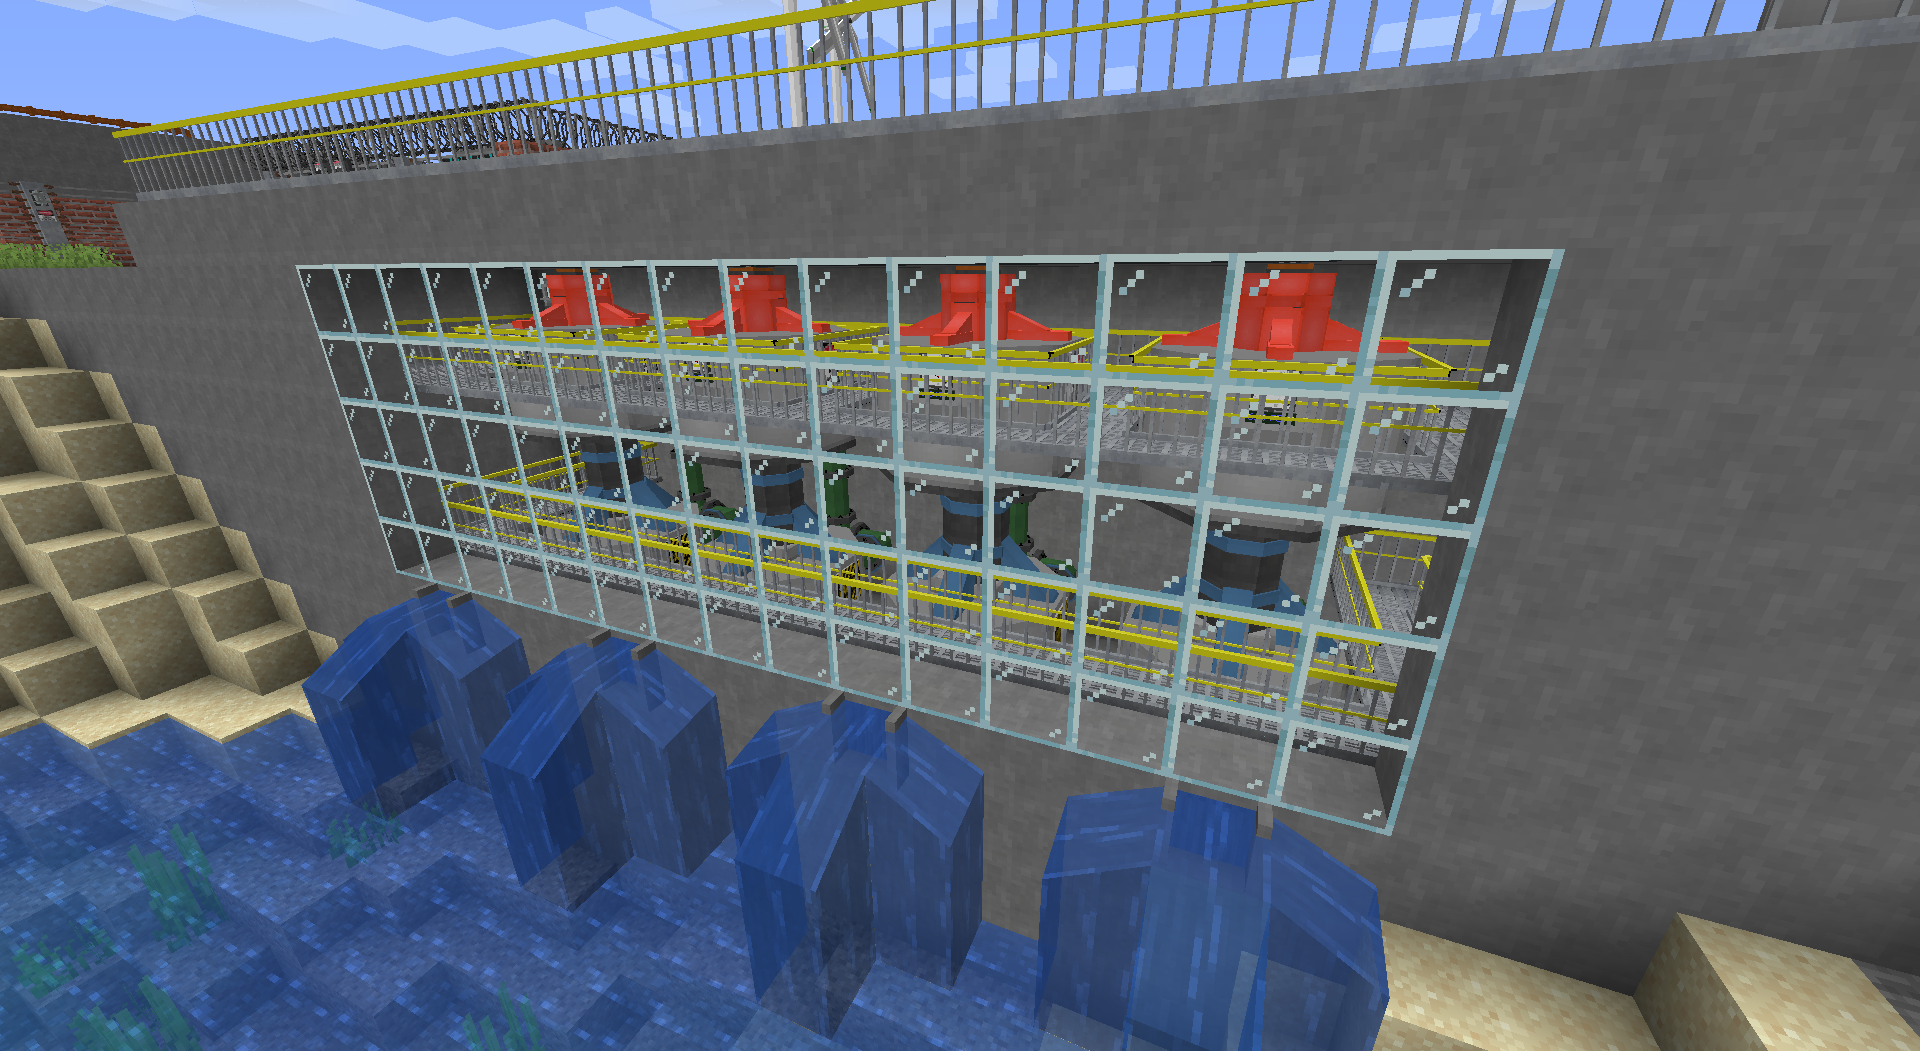 Industrial Renewal Port screenshot 1